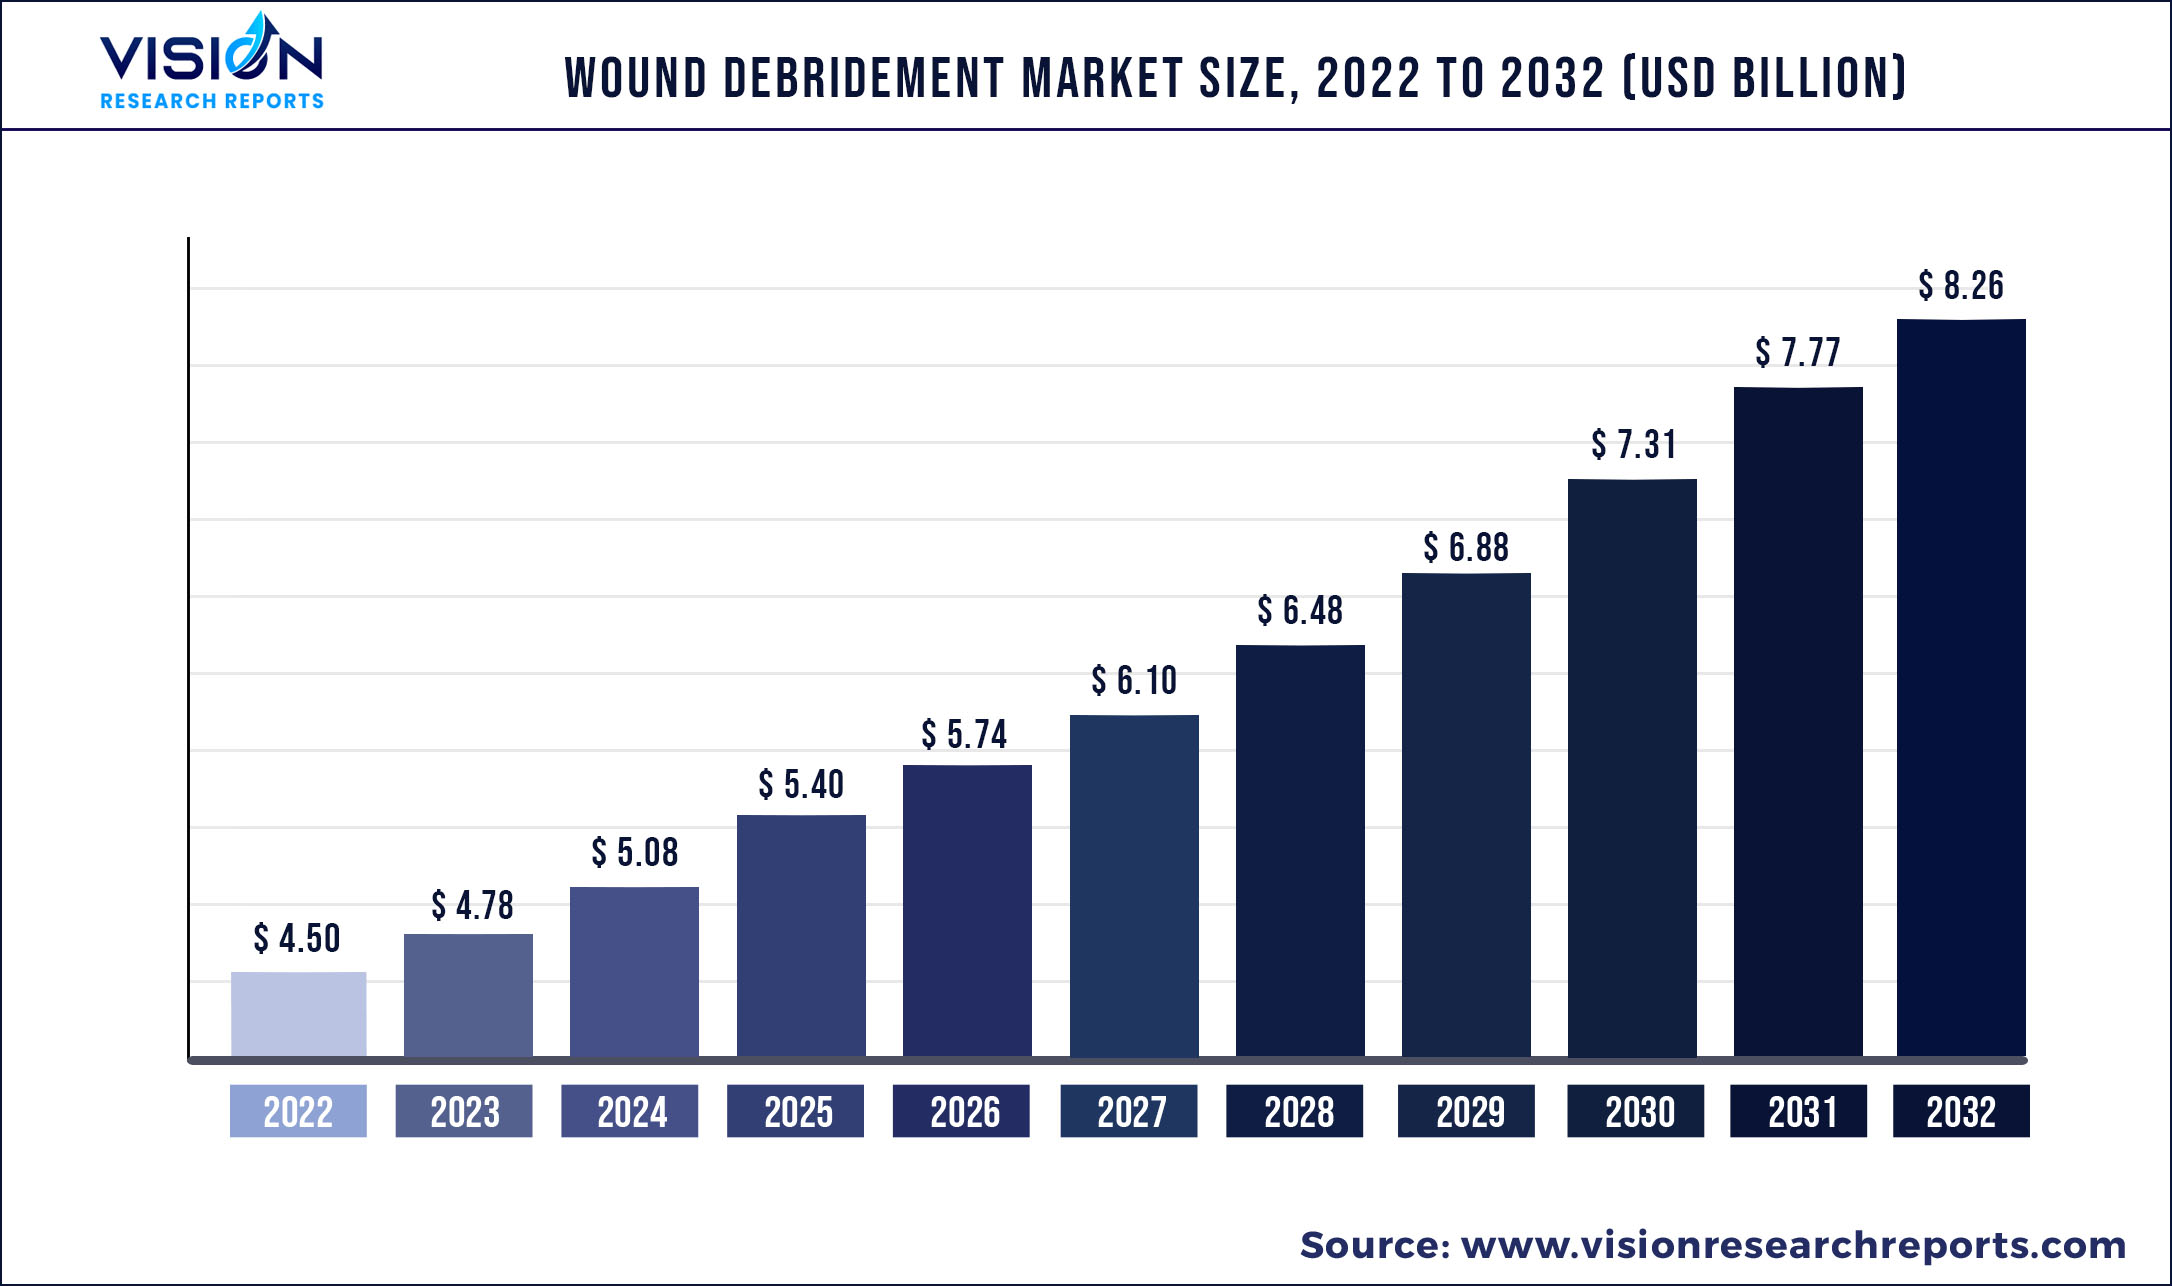 Wound Debridement Market Size 2022 to 2032